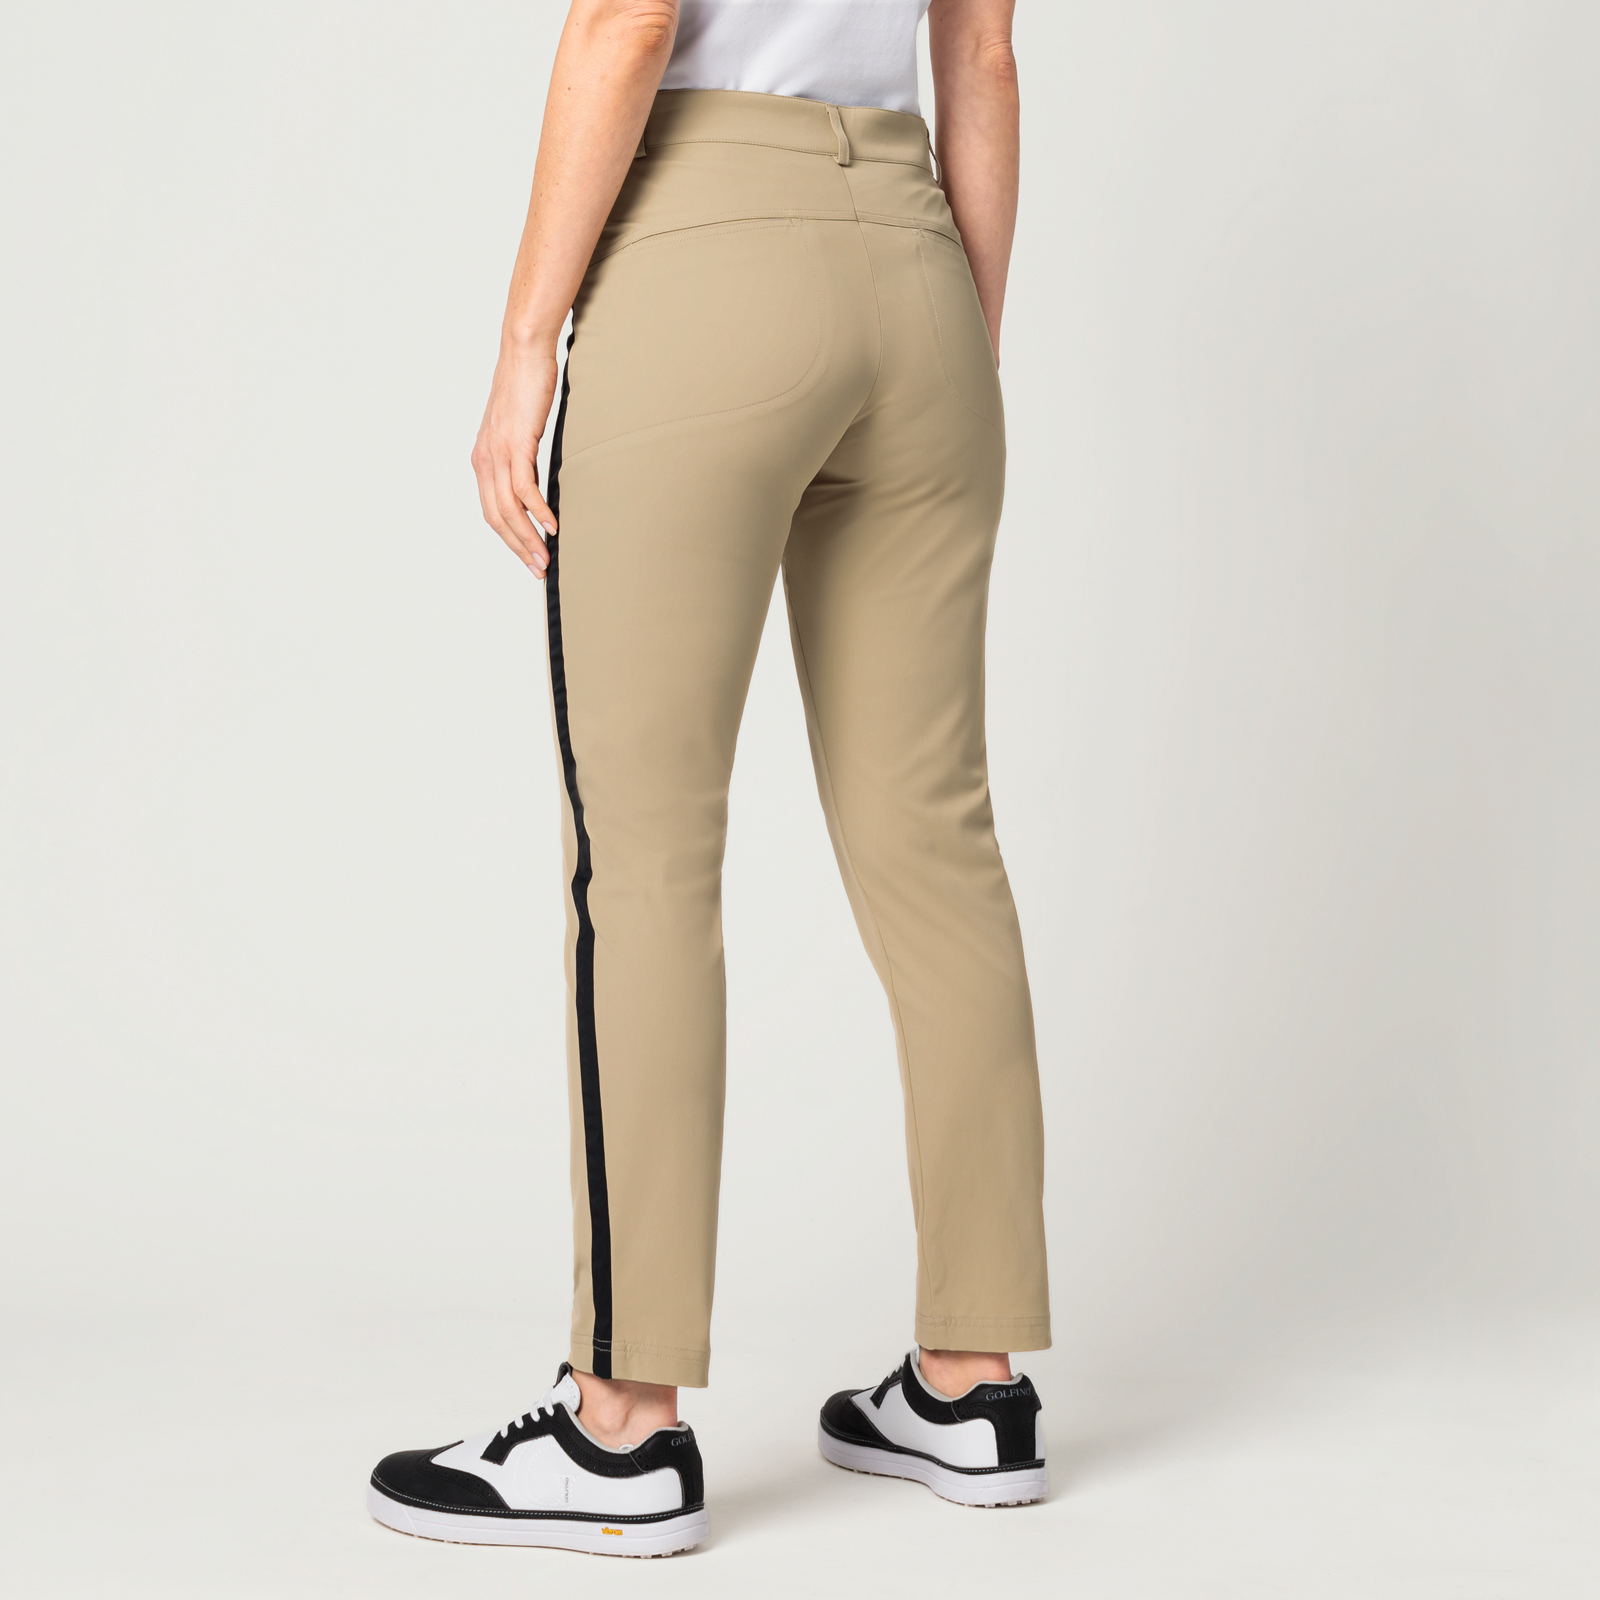 Techno Stretch Damen Golf 7/8 Hose mit Sonnenschutz